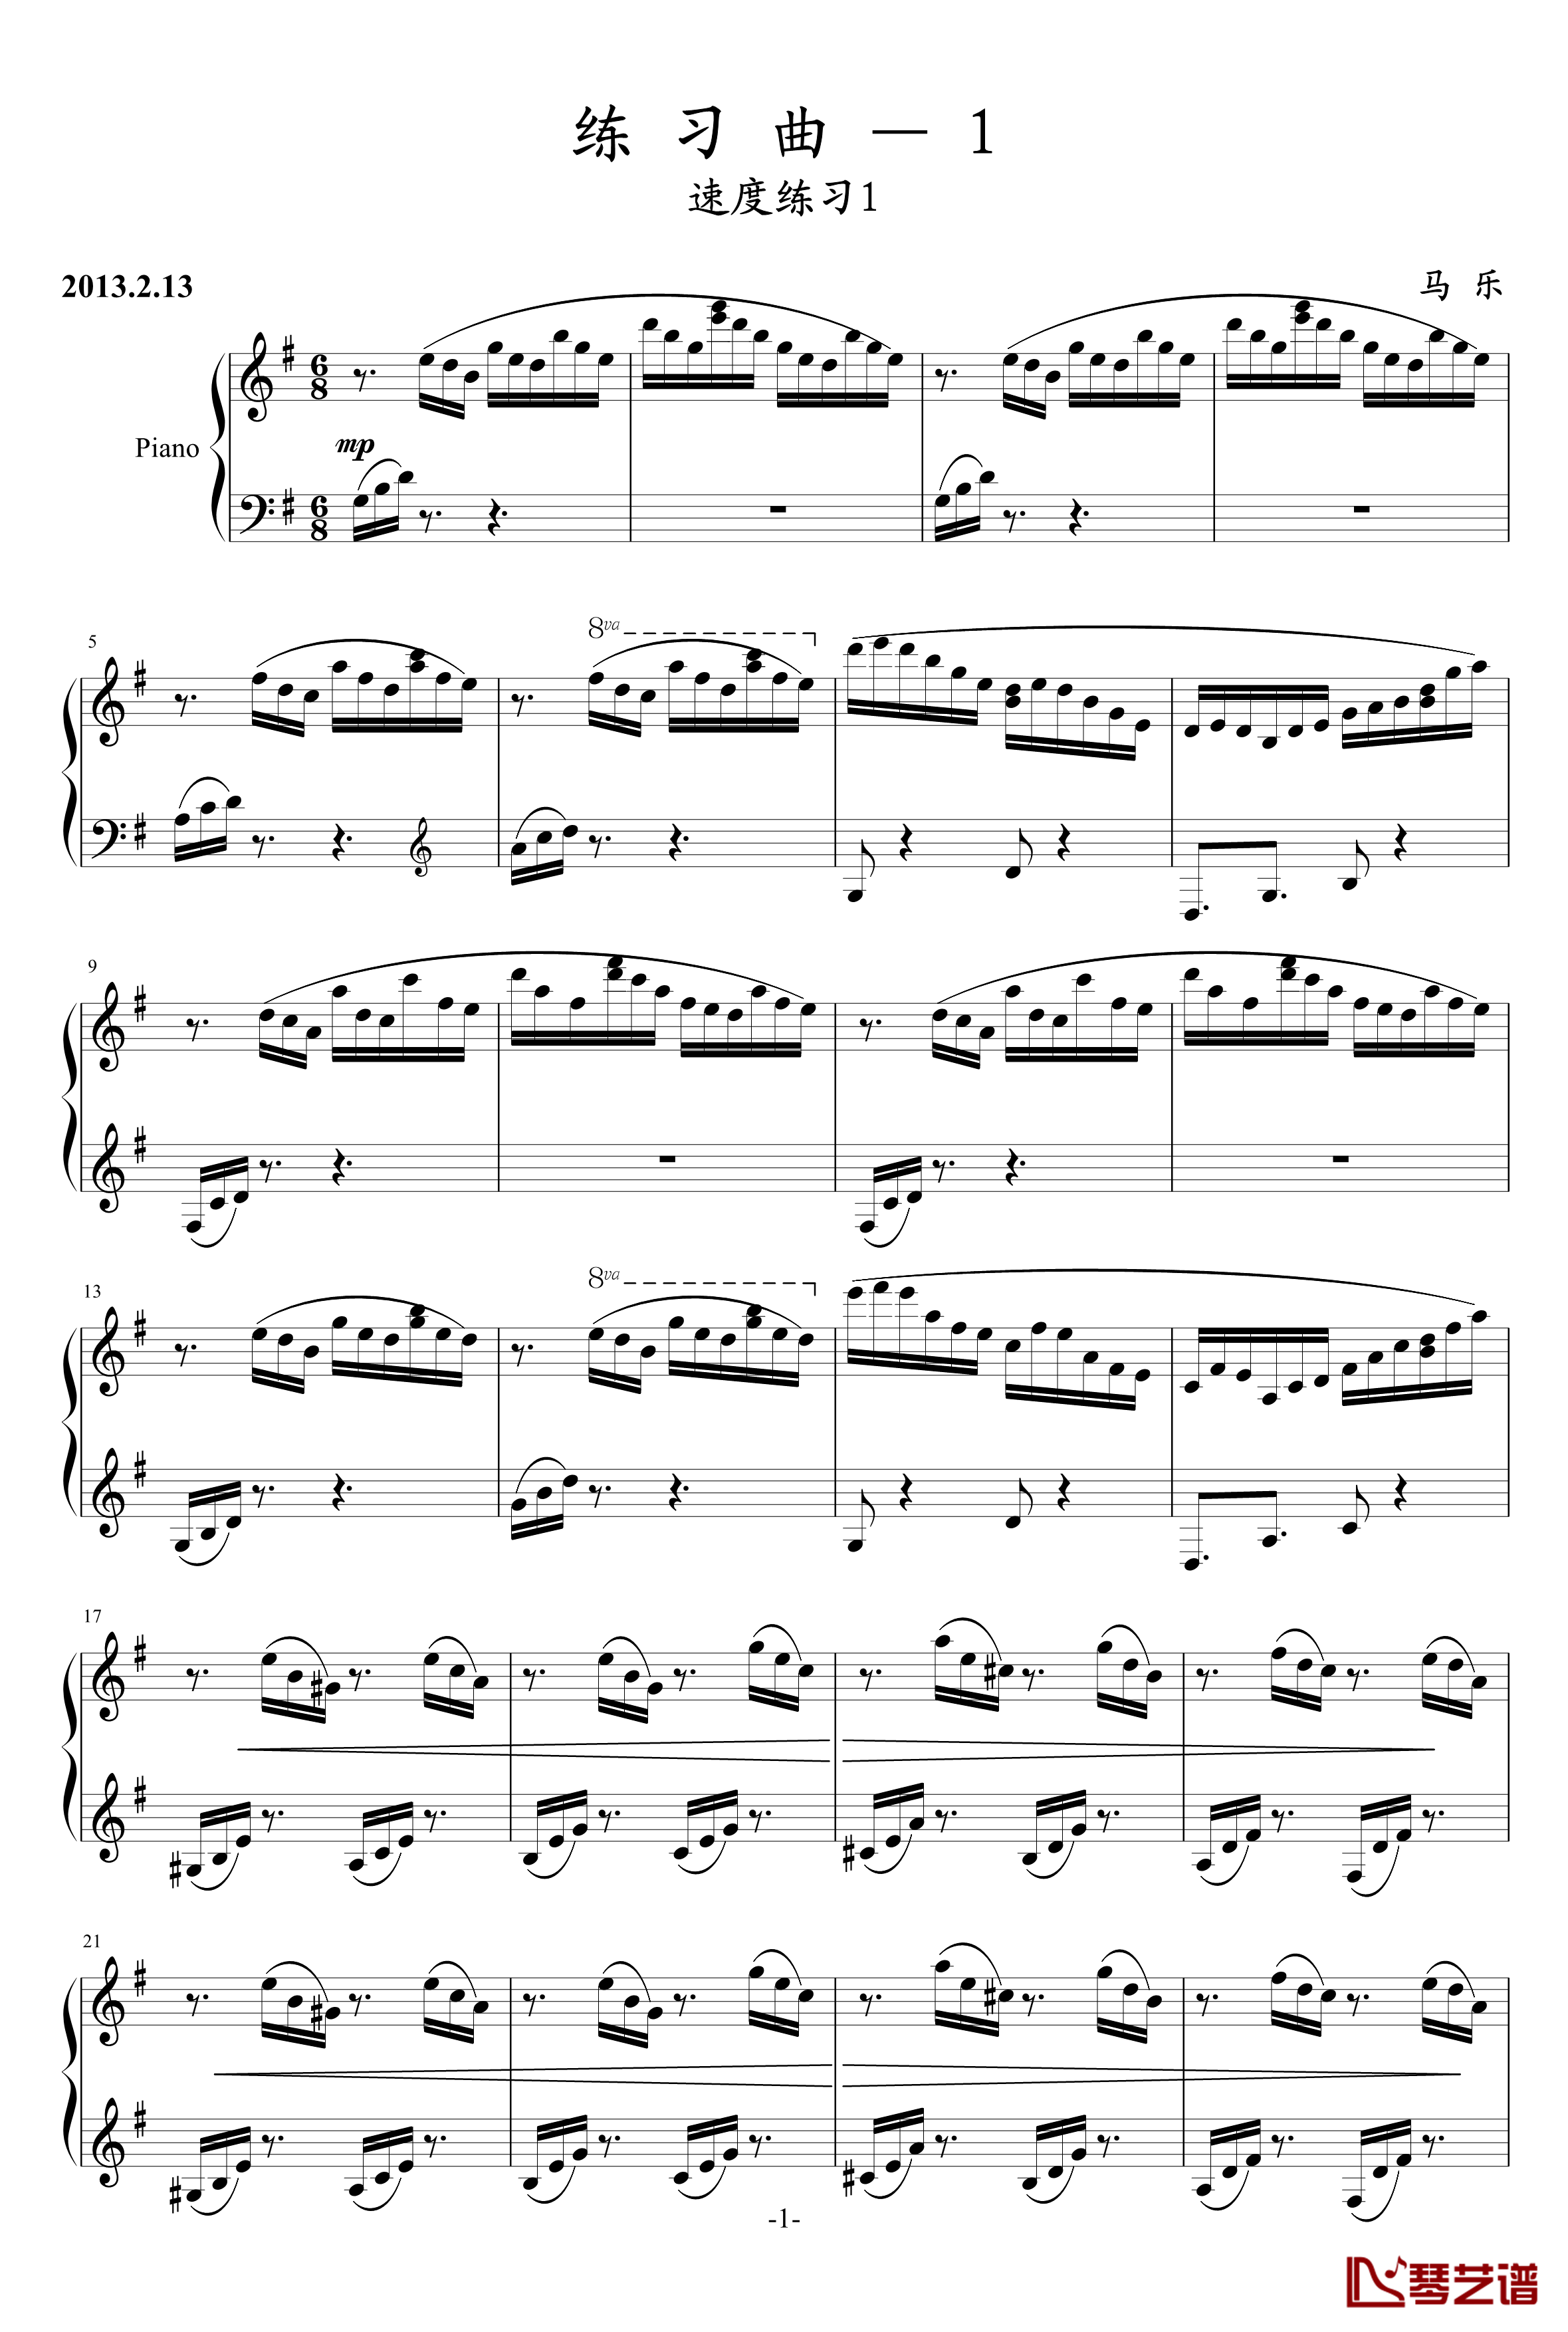 练习曲第1首钢琴谱-乐之琴1